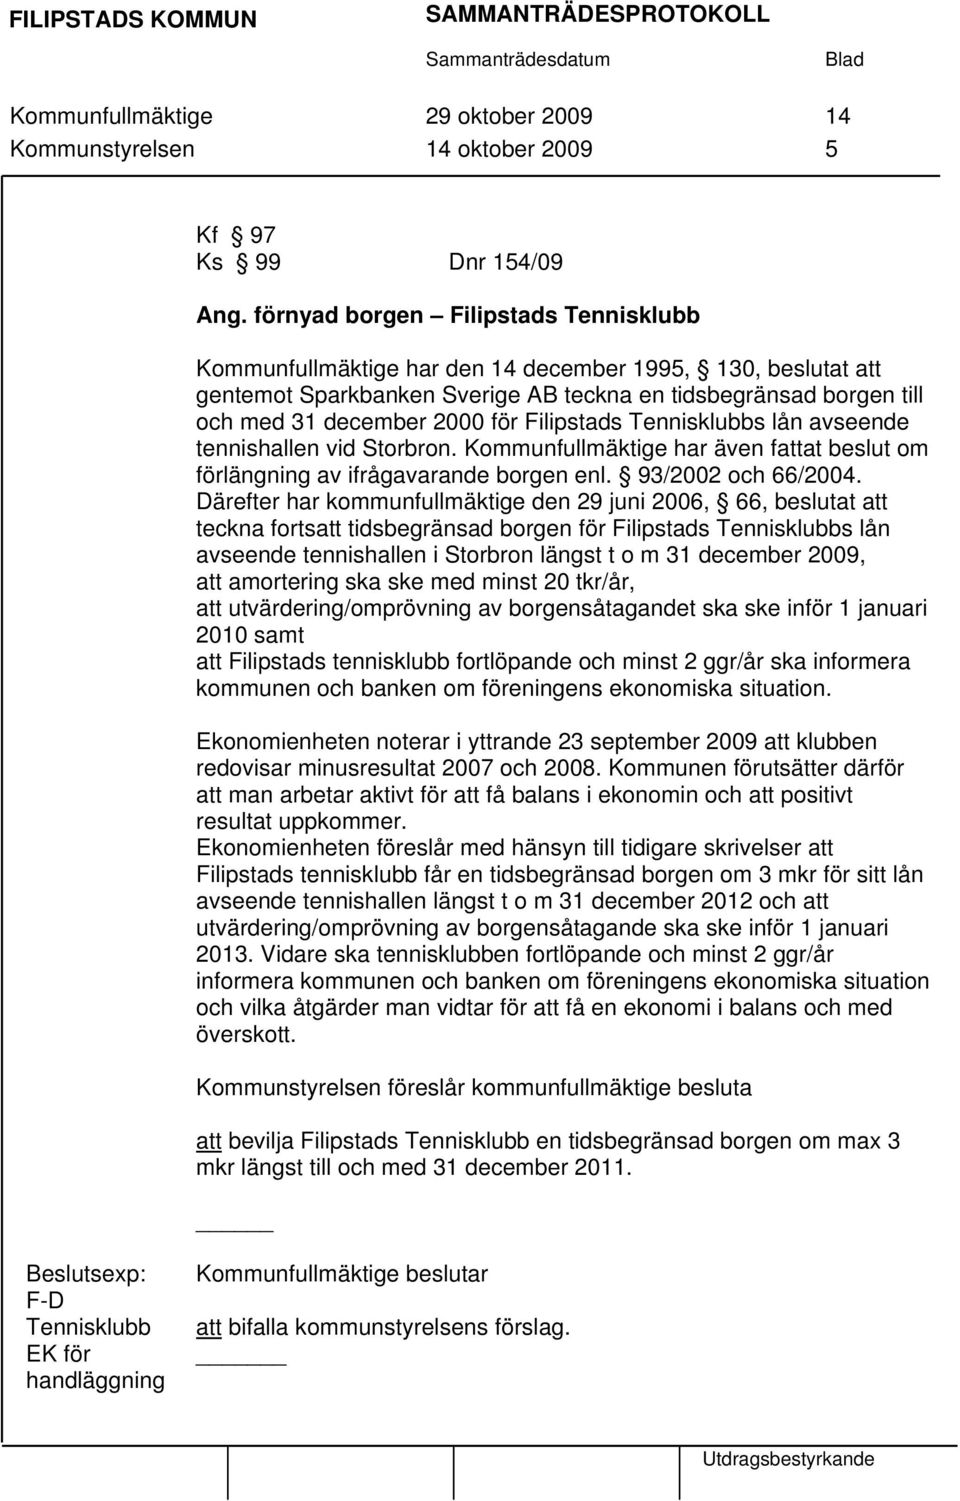 Filipstads Tennisklubbs lån avseende tennishallen vid Storbron. Kommunfullmäktige har även fattat beslut om förlängning av ifrågavarande borgen enl. 93/2002 och 66/2004.